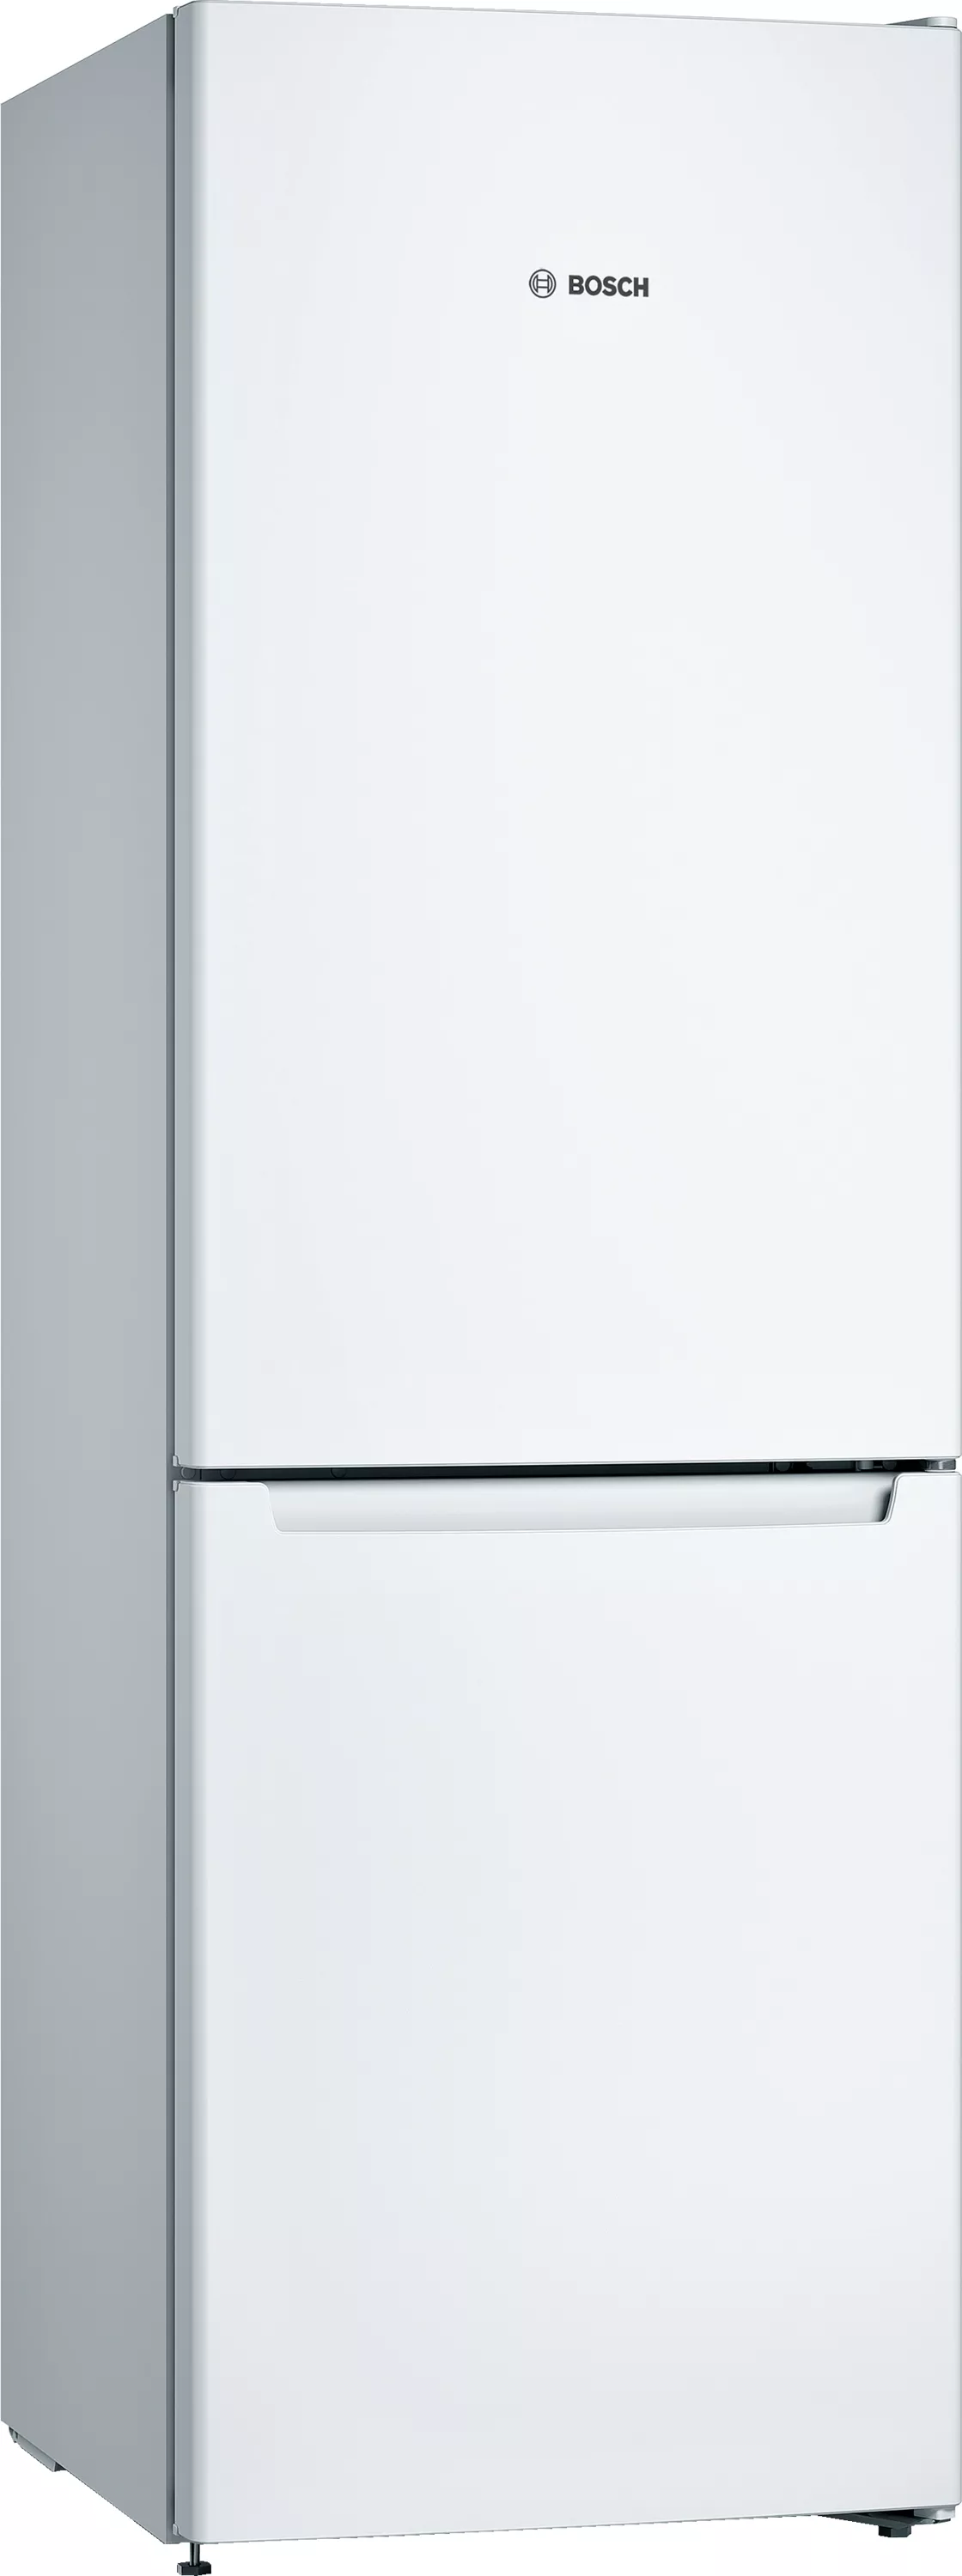 Bosch Serie 2, KGN36NWEA 186 Gefrierbereich | Kühl-Gefrier-Kombination mit Weiß, x 4242005196708 Freistehende cm, unten, 60